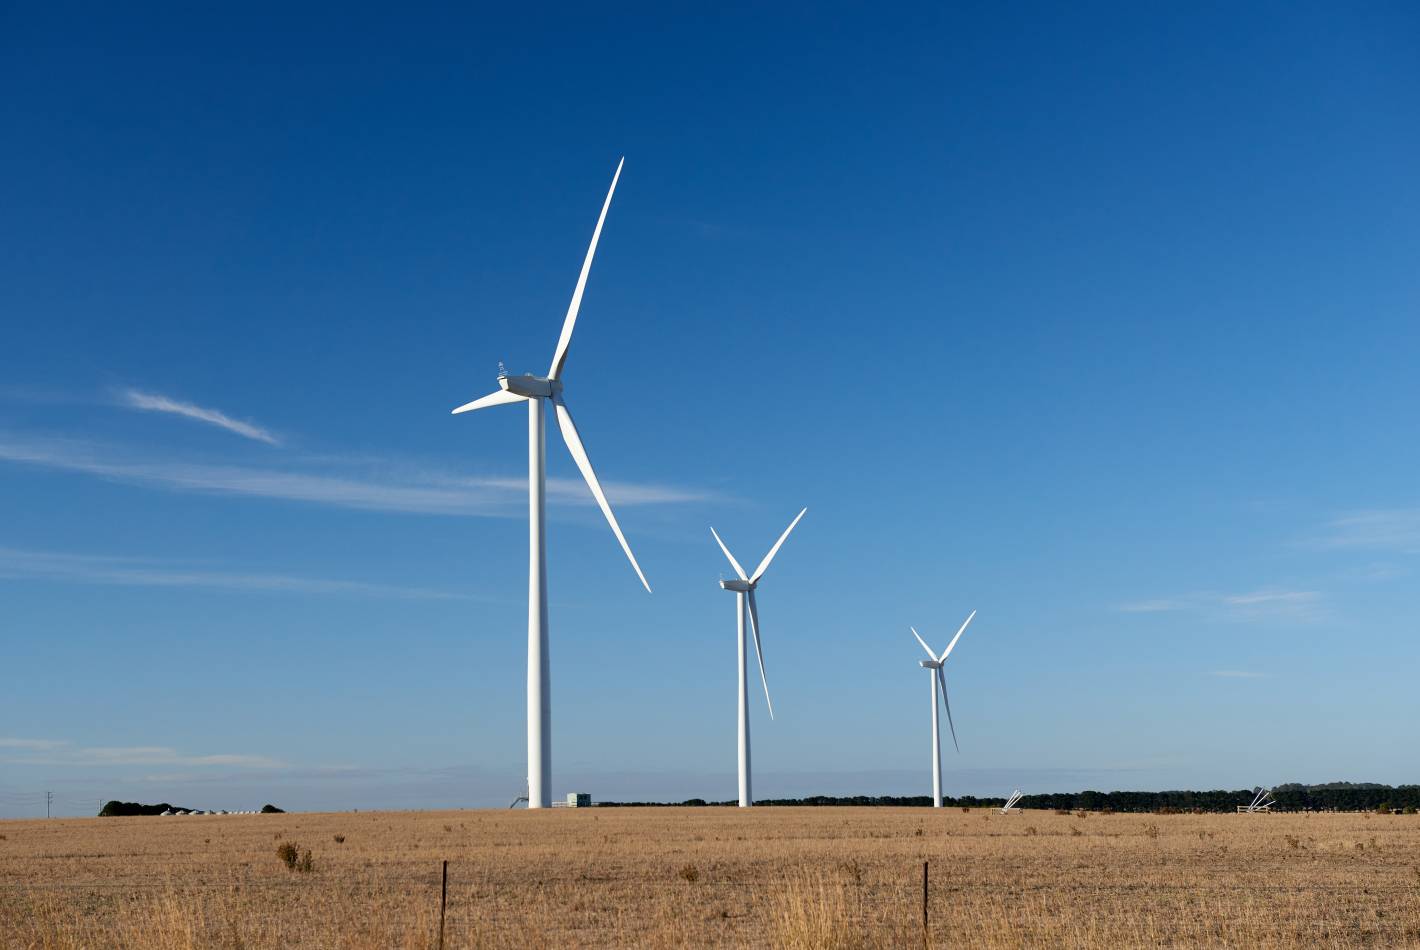 Tchelery Wind Farm